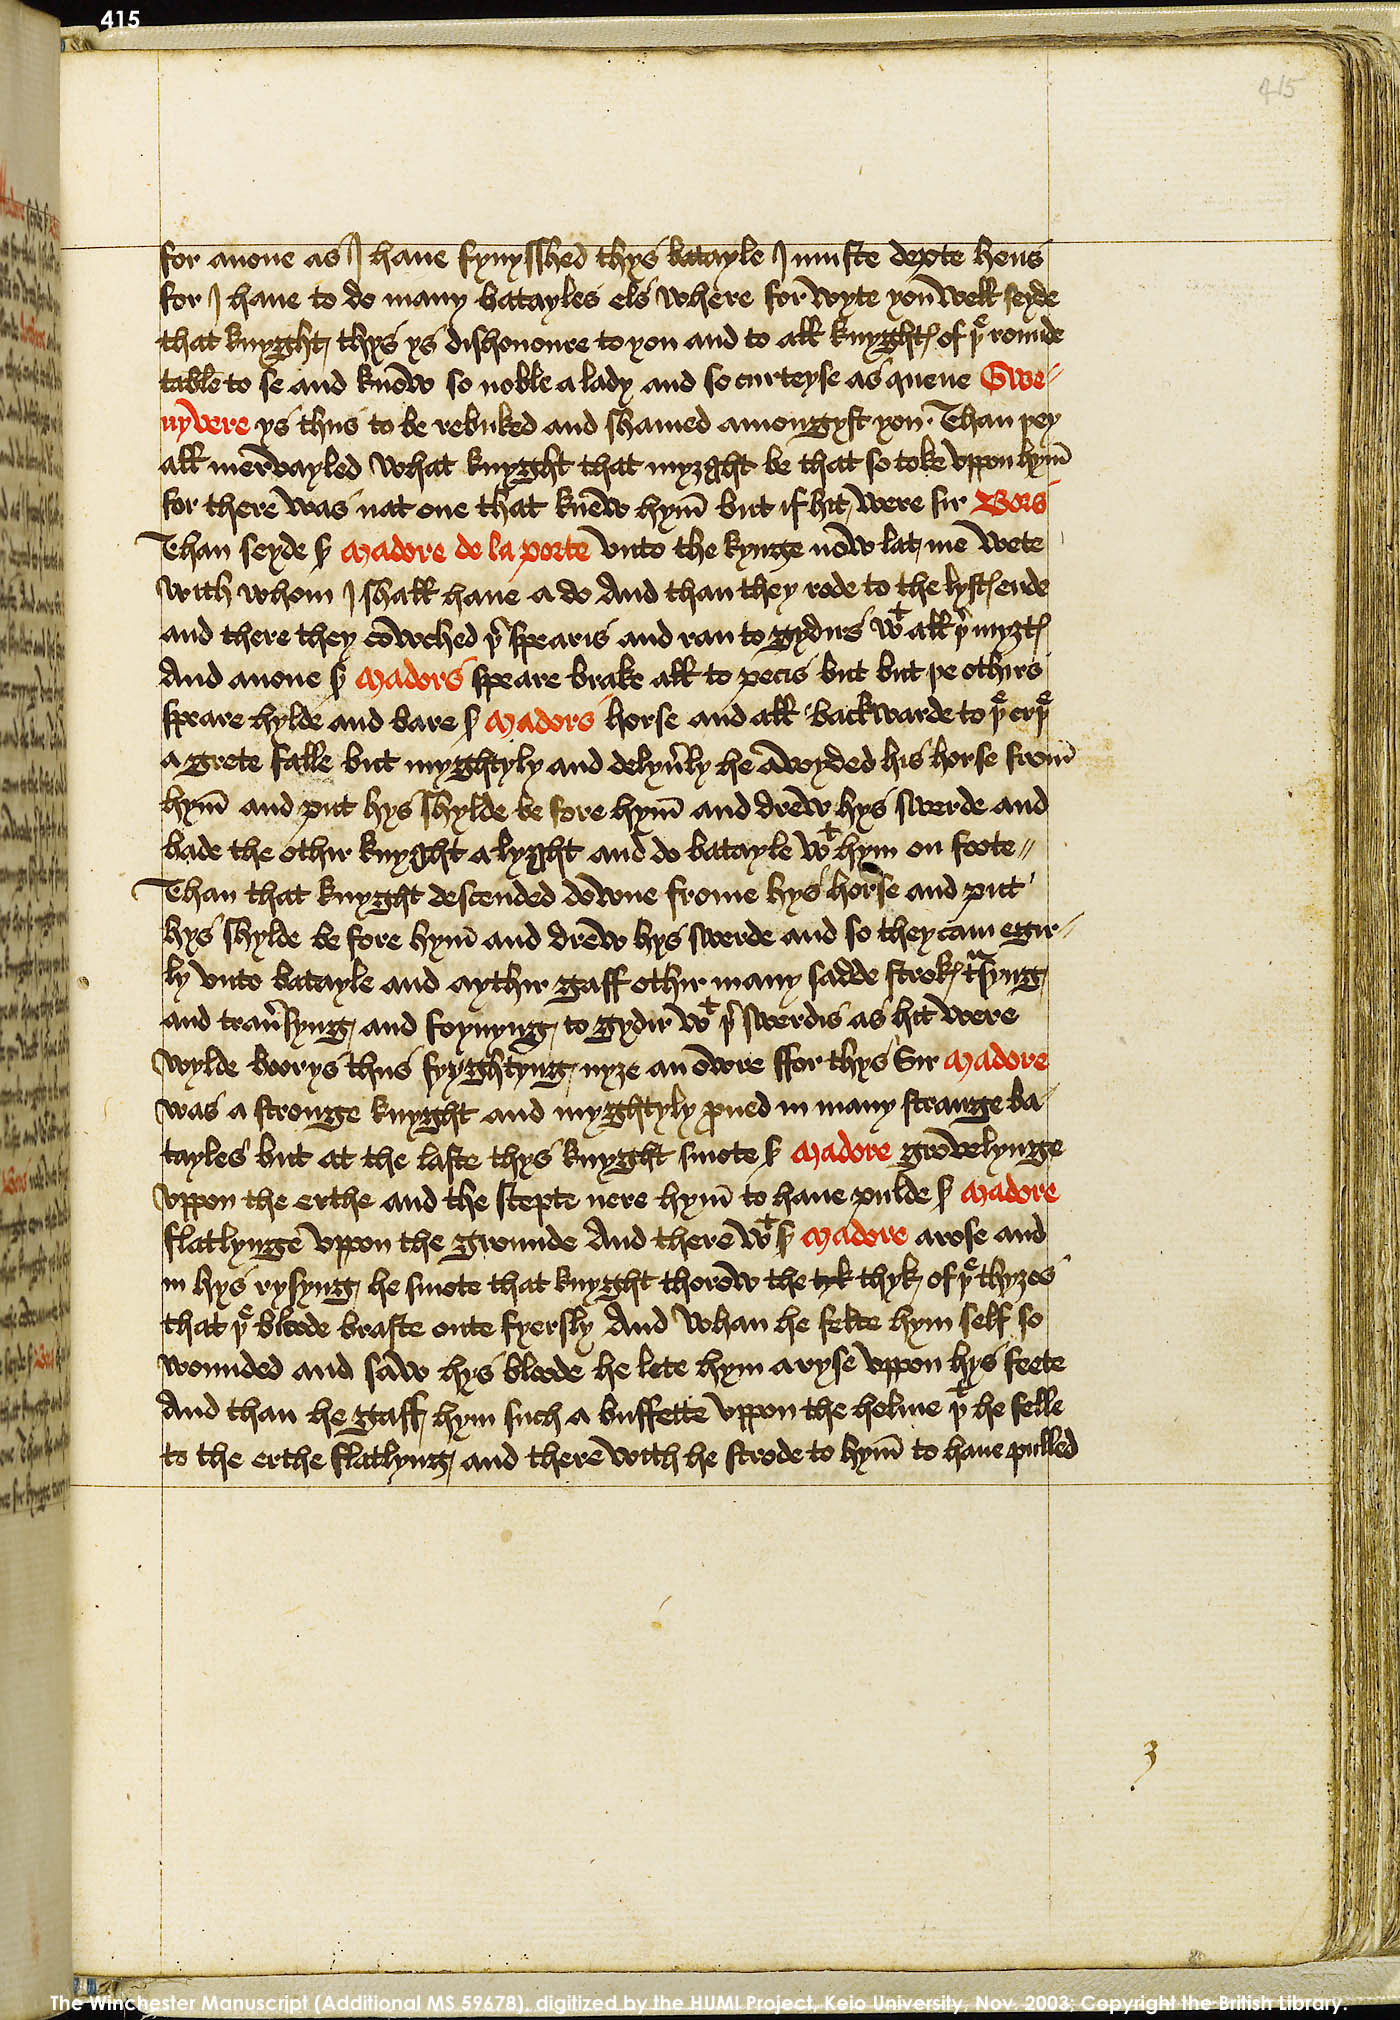 Folio 415r